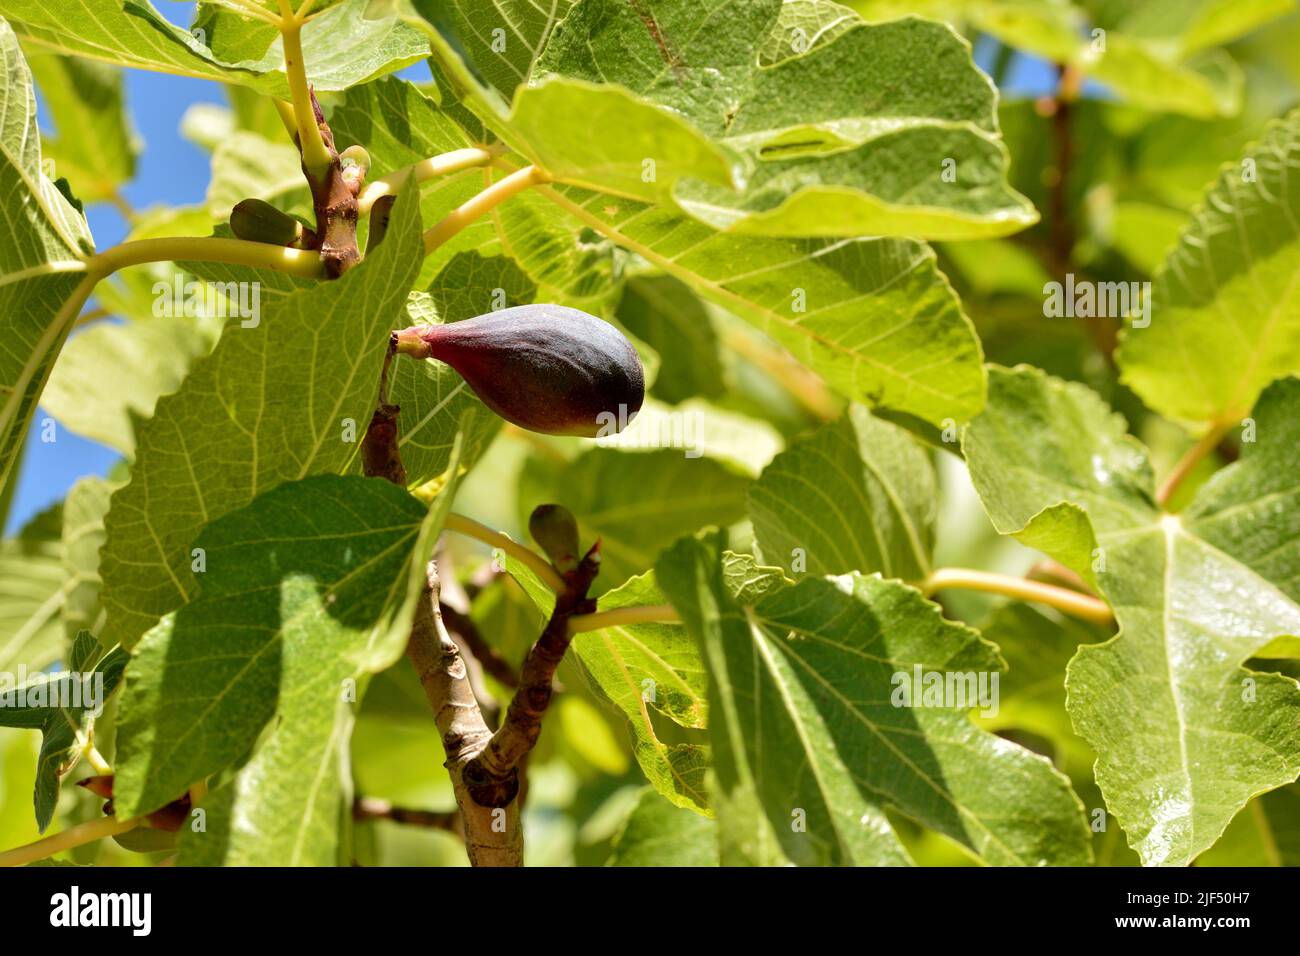 Detalle de los frutos de la higuera, ficus carica, en su árbol en verano Foto Stock